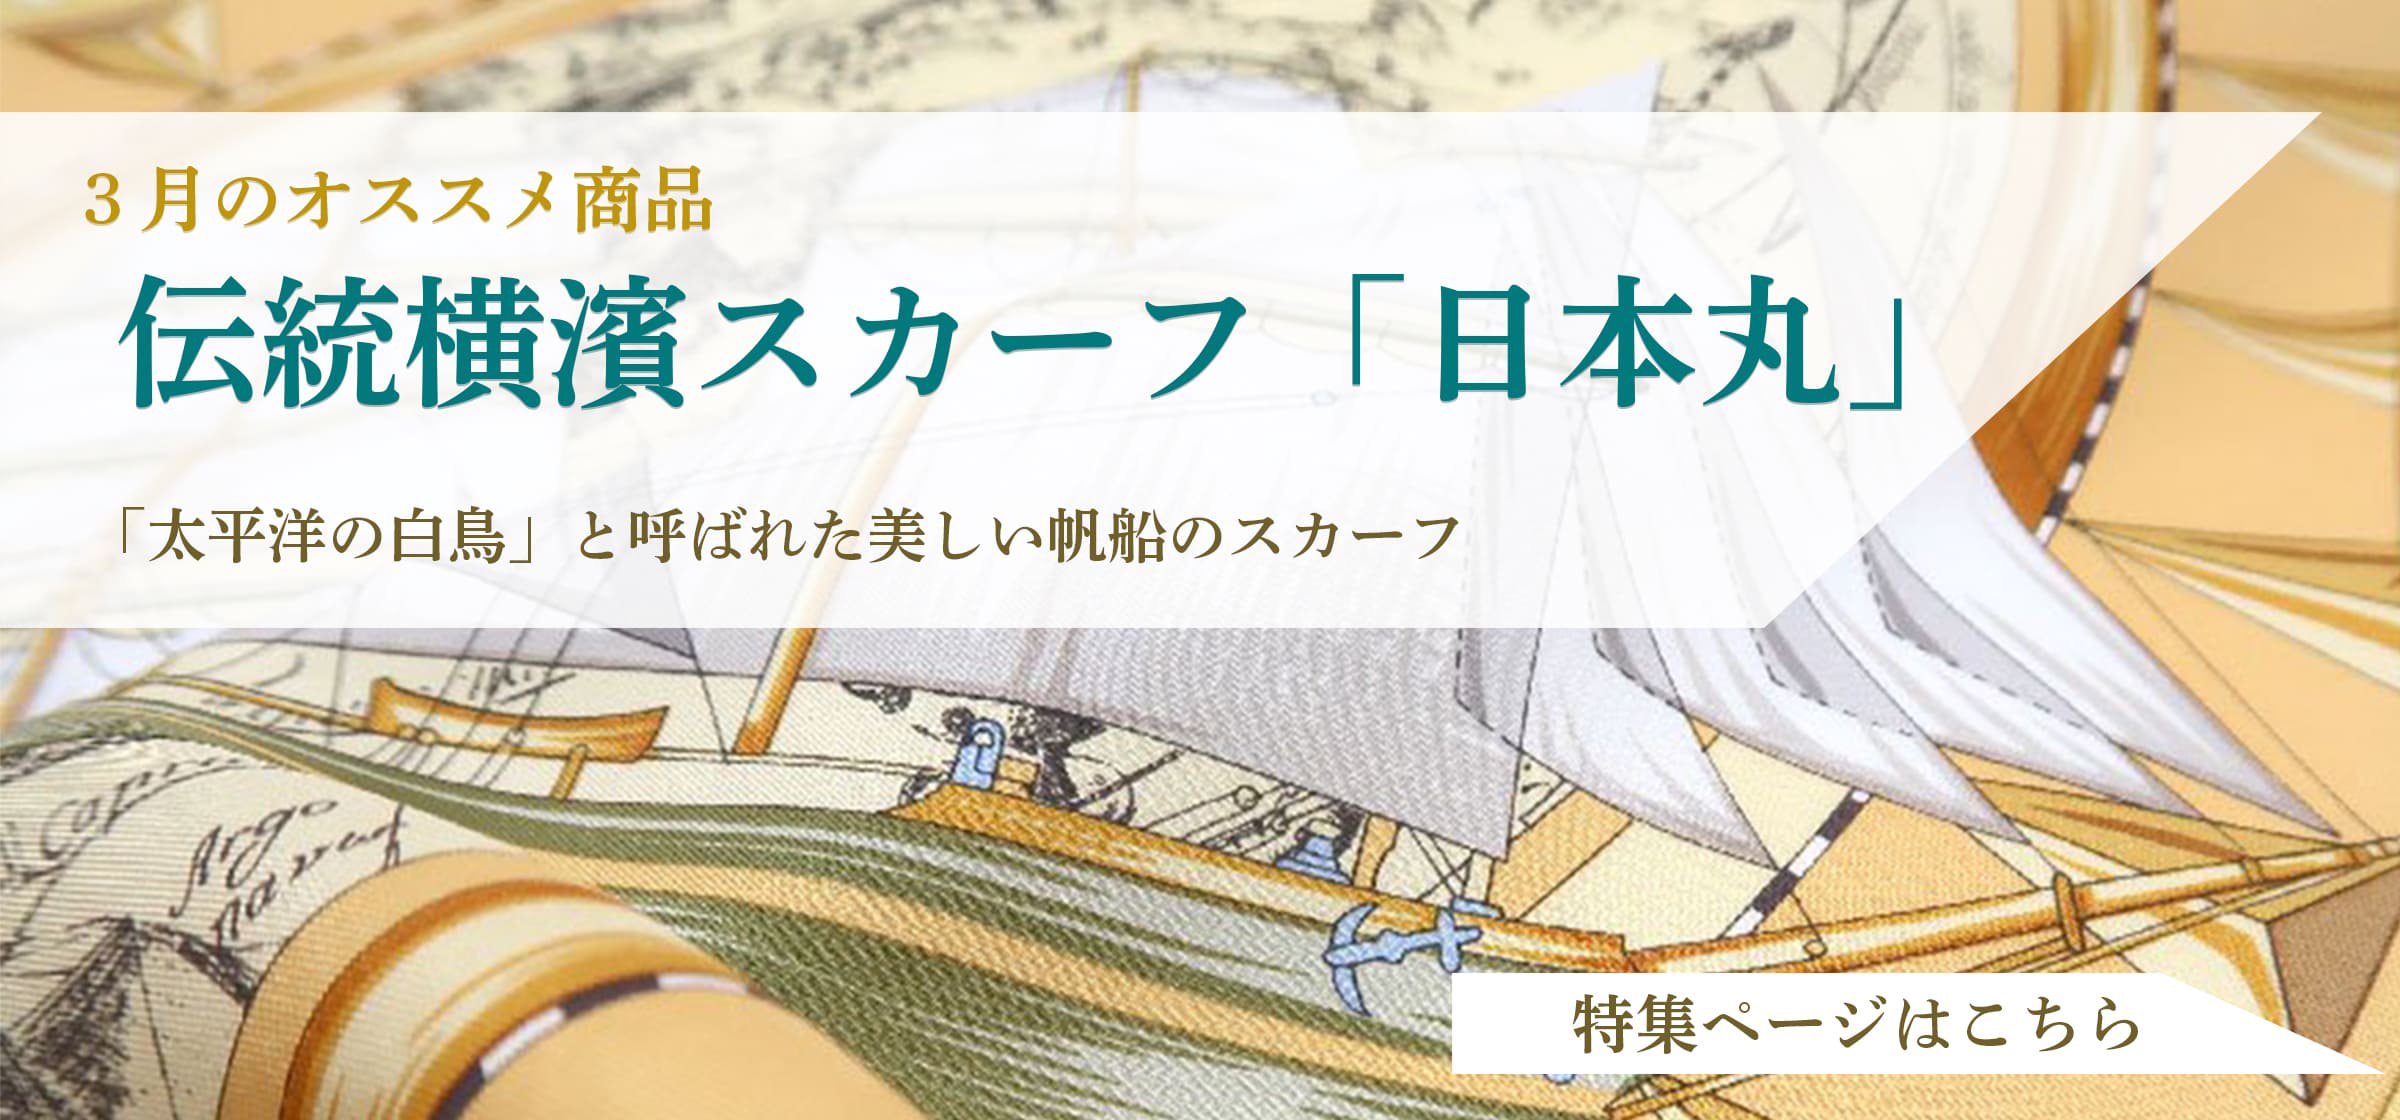 日本丸(CM5-287) 伝統横濱スカーフ 大判 シルクツイル スカーフ 